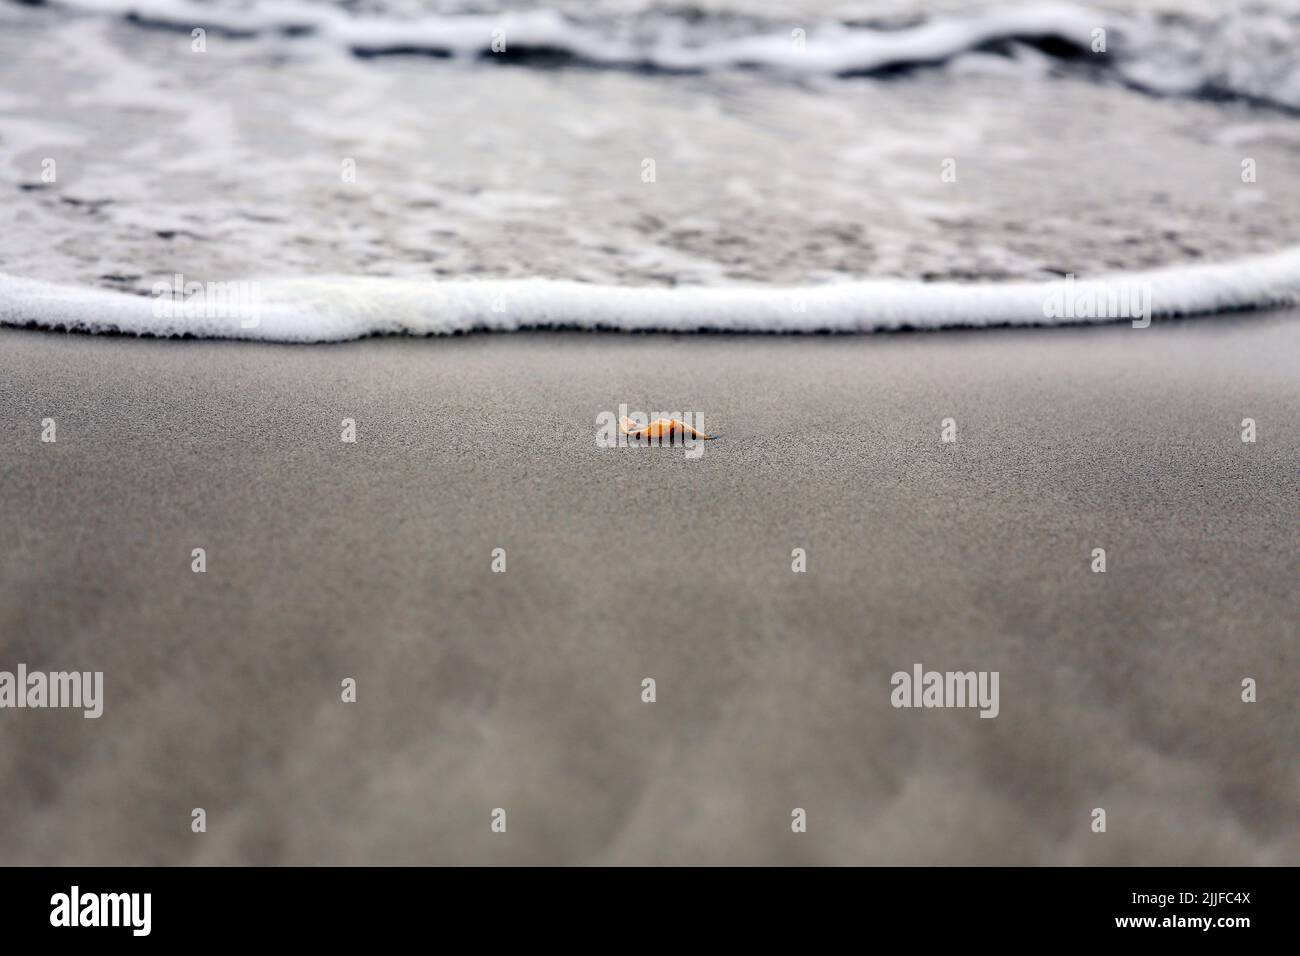 conchiglia singola di fronte all'acqua sulla spiaggia Foto Stock